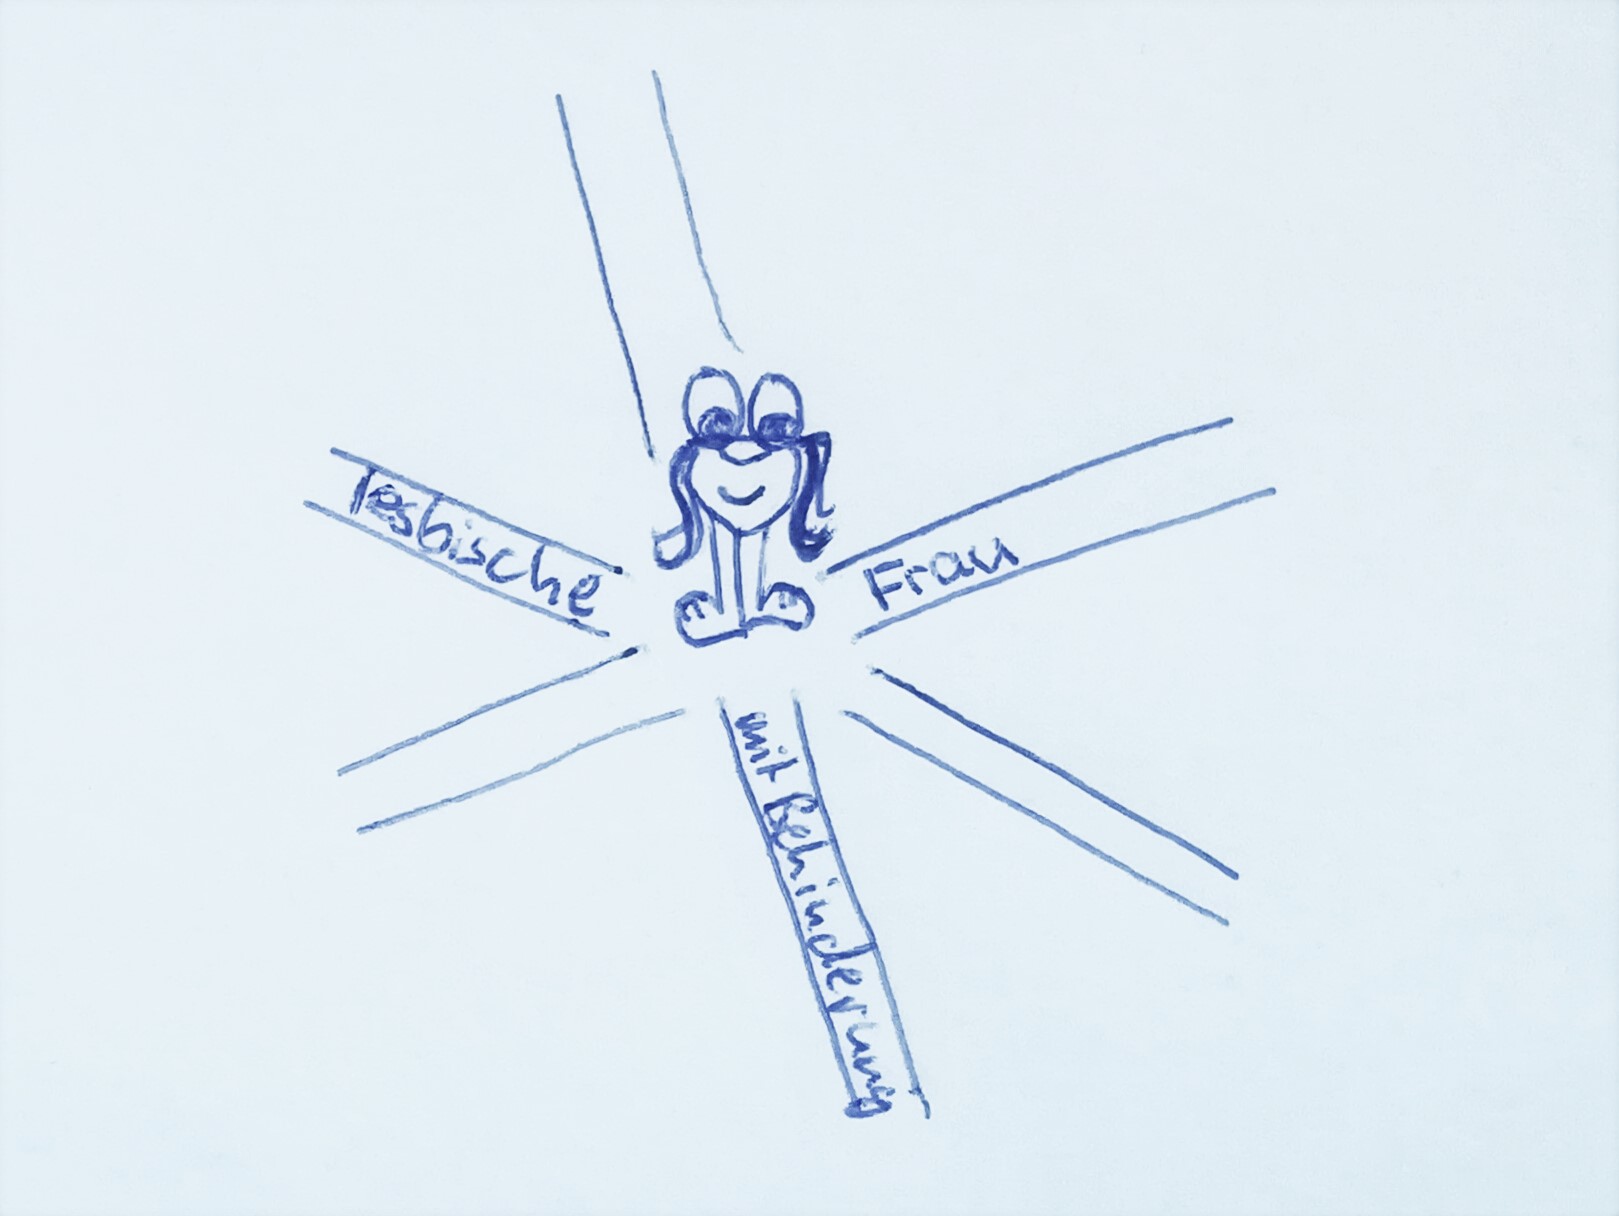 Zeichnung: Frau steht in der Mitte einer Straßenkreuzung, die Straßen sind mit "lesbische", "Frau" und "mit Behinderung" beschriftet.